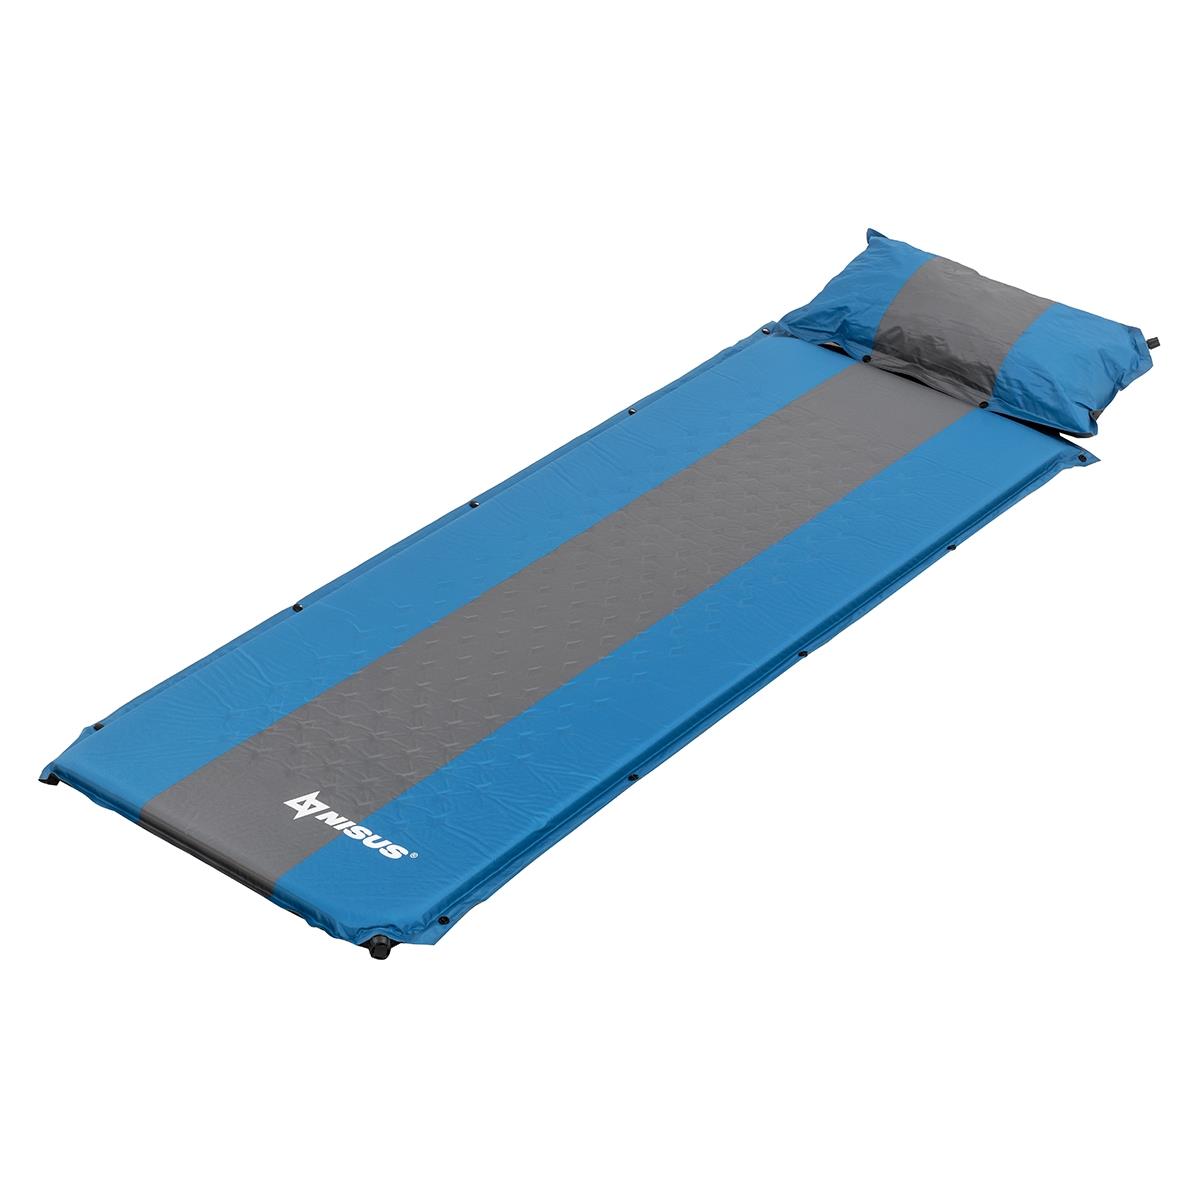 Коврик самонадув. с подушкой 30-170x65x4 голубой/серый (N-004P-BG) Nisus коврик для рукоделия двусторонний 28 х 43 см